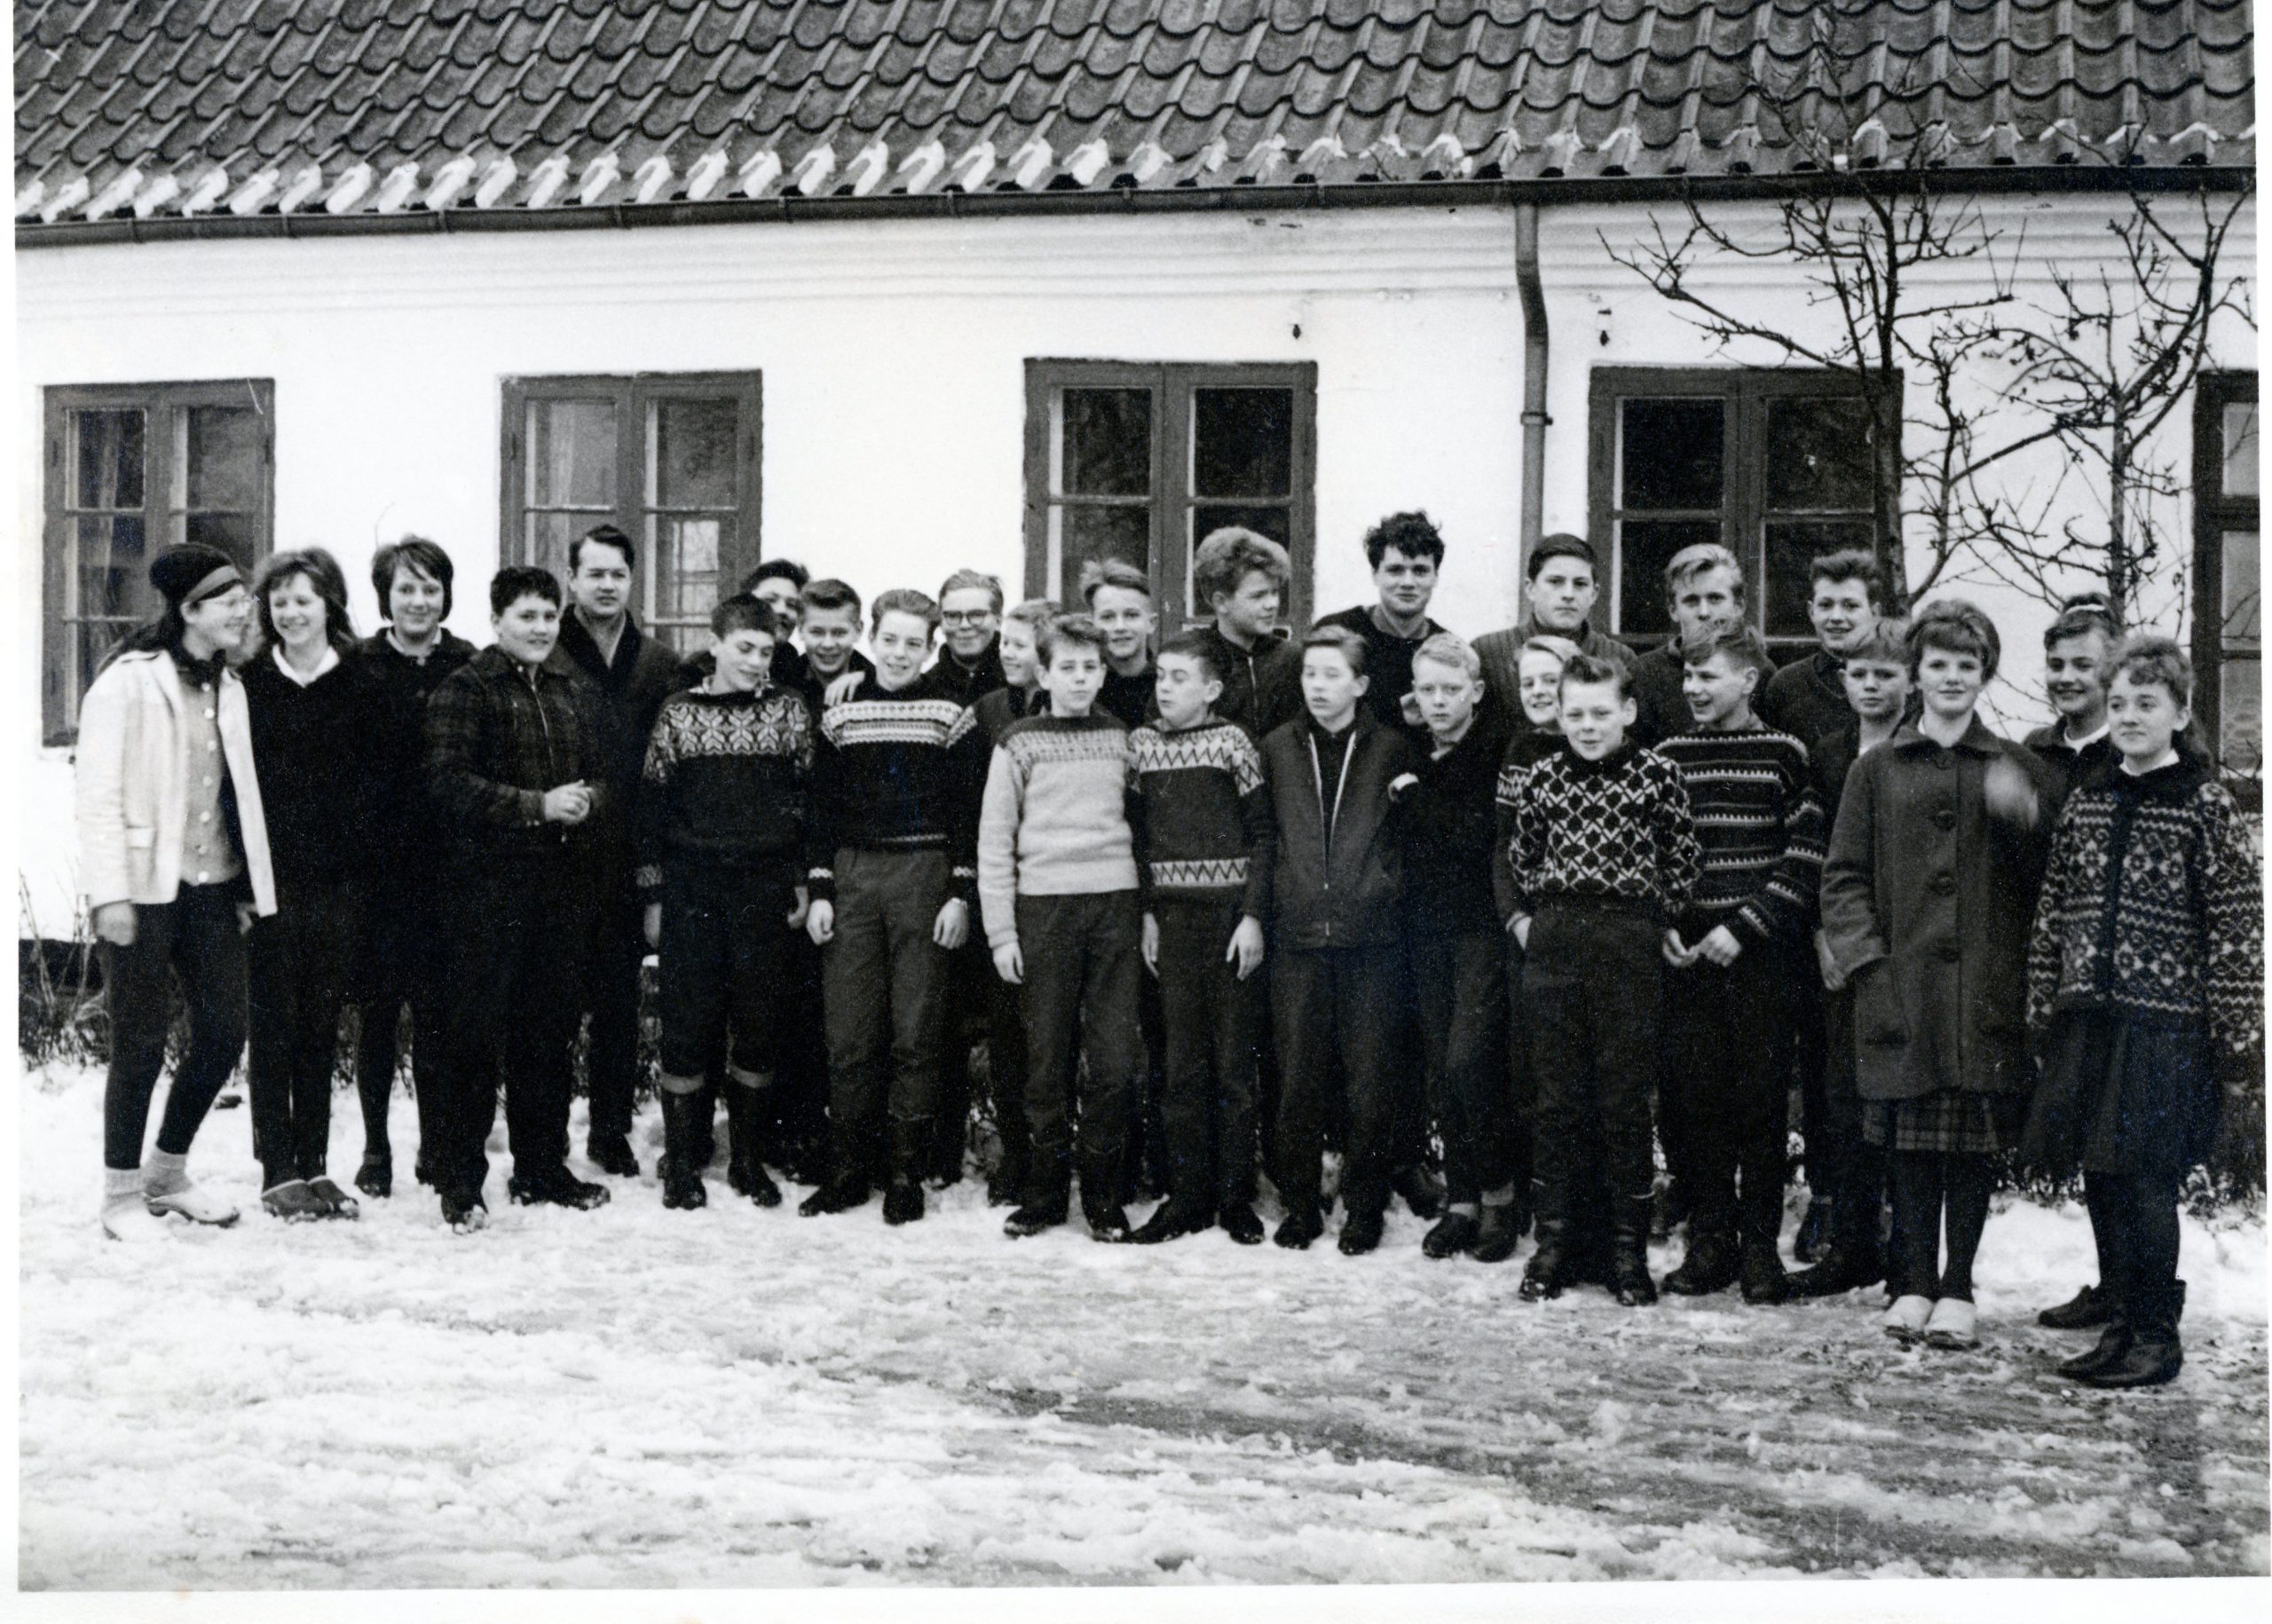 Konfirmation i Ingstrup kirke 31. marts 1963